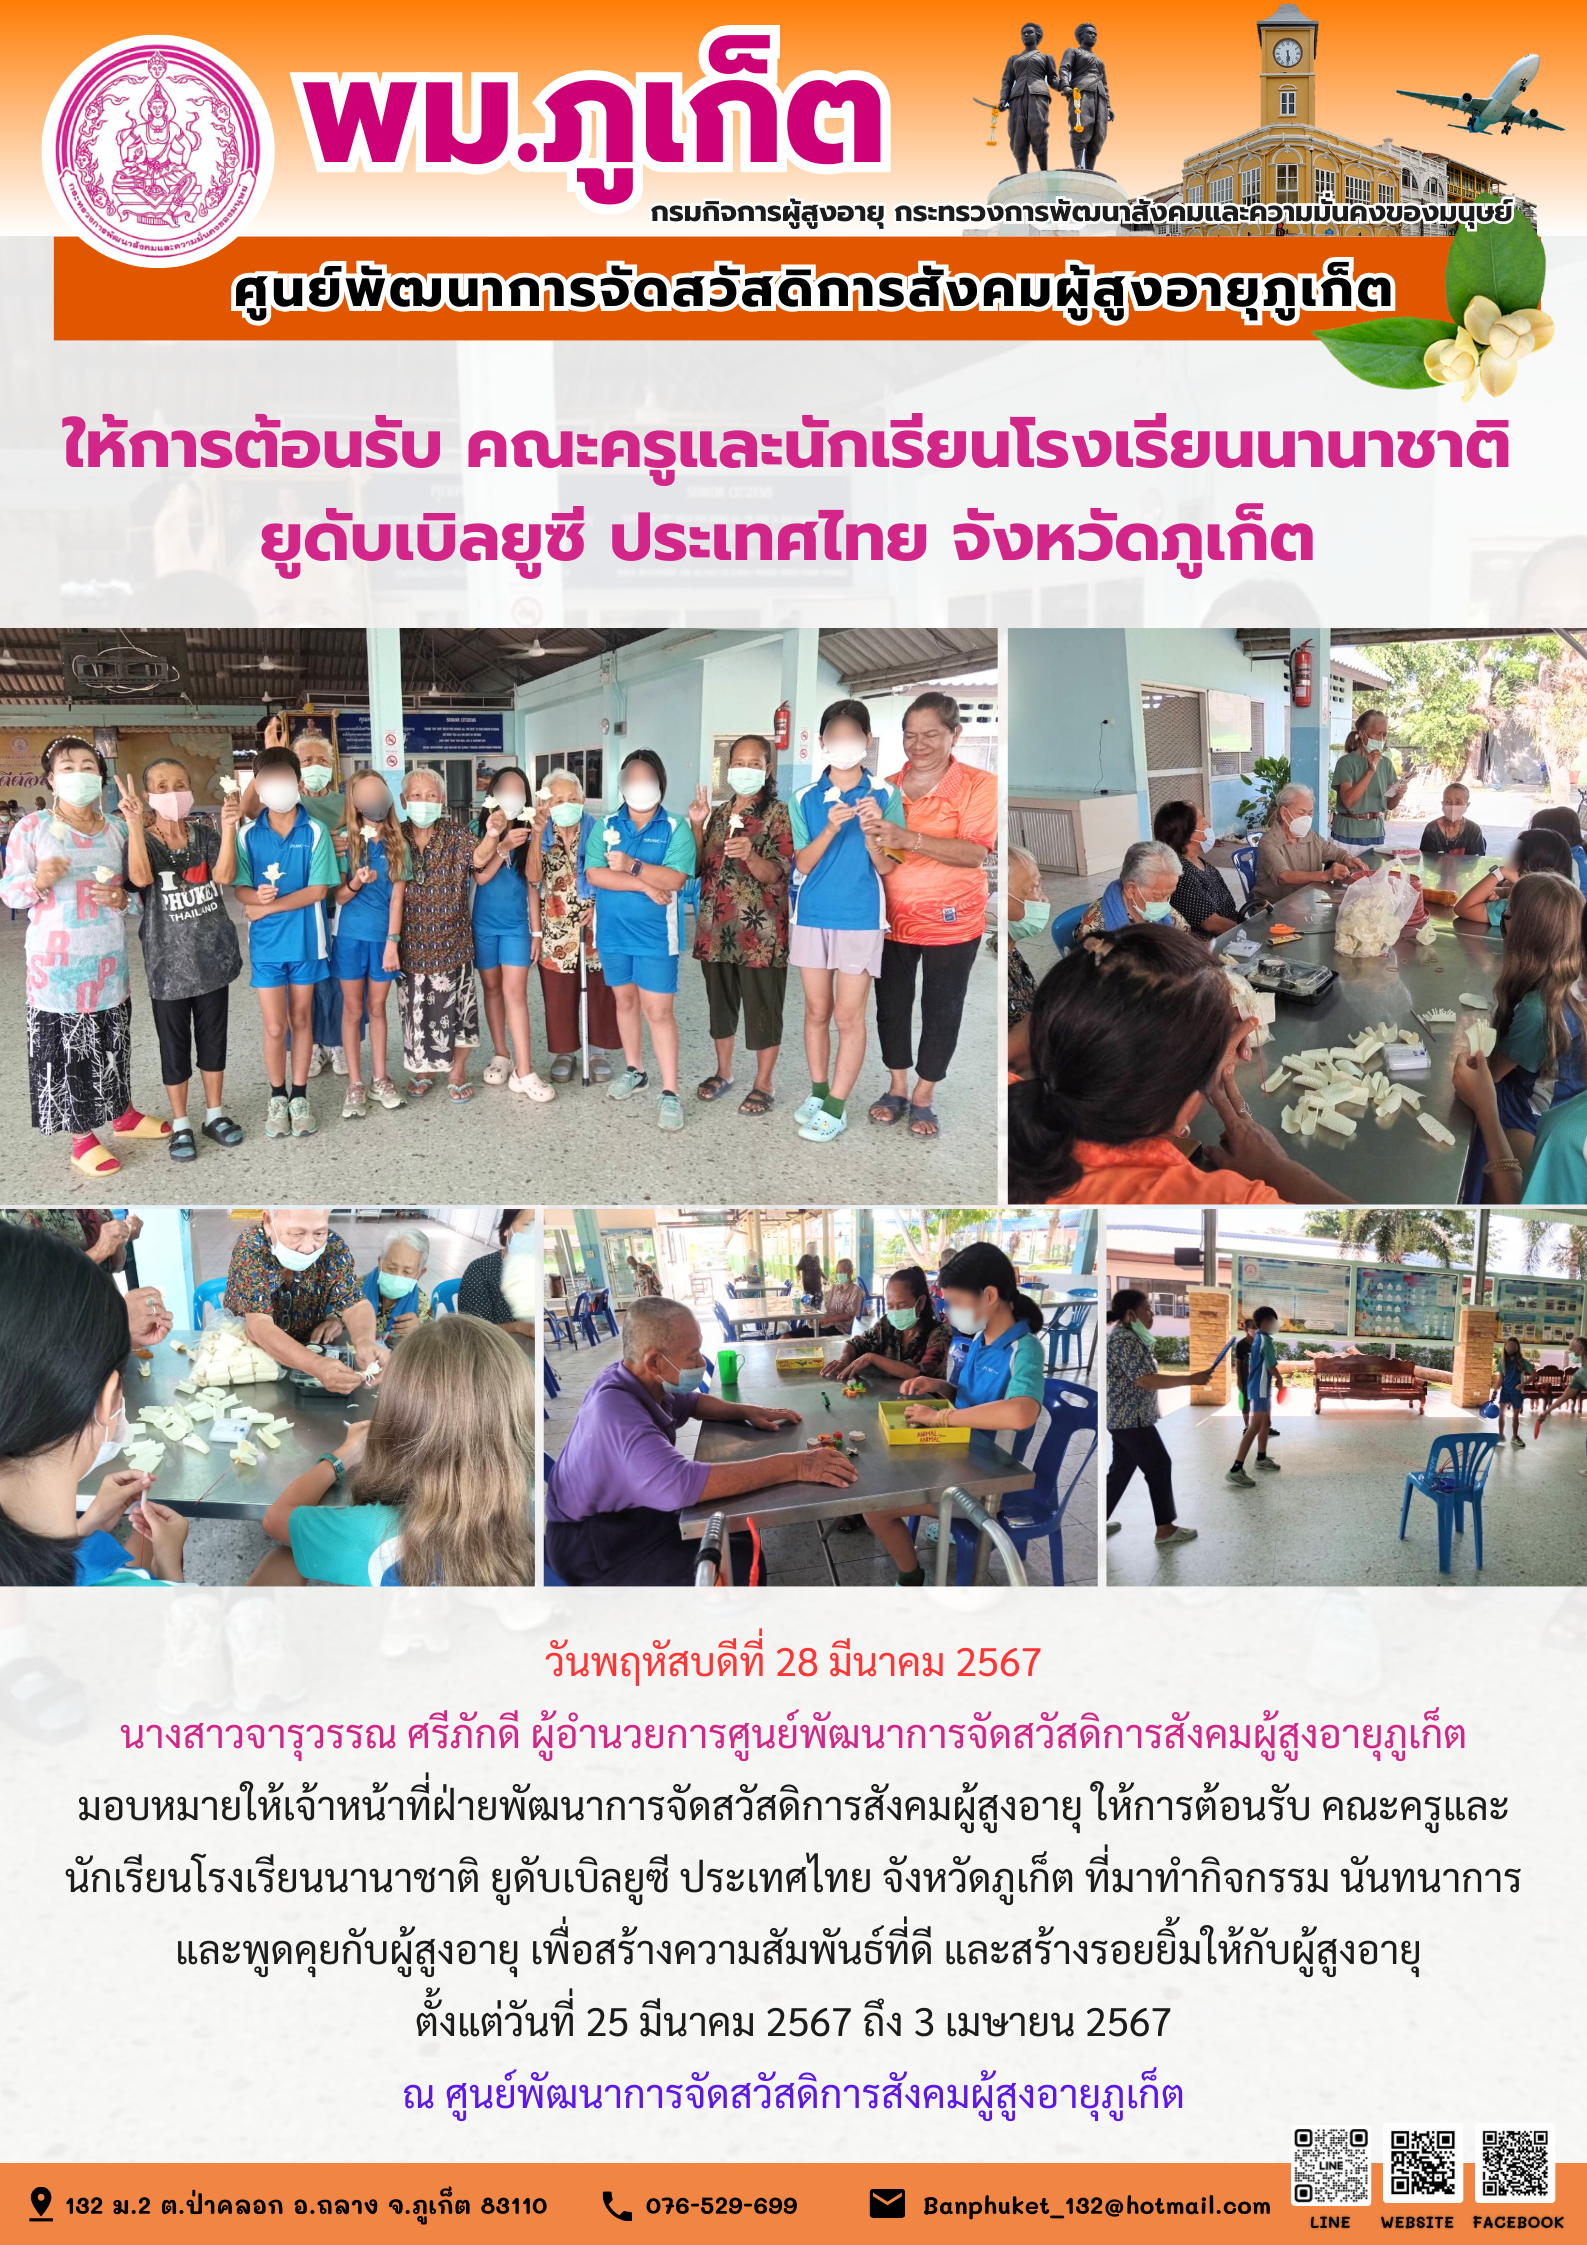 ให้การต้อนรับ คณะครูและนักเรียนโรงเรียนนานาชาติ ยูดับเบิลยูซี ประเทศไทย จังหวัดภูเก็ต